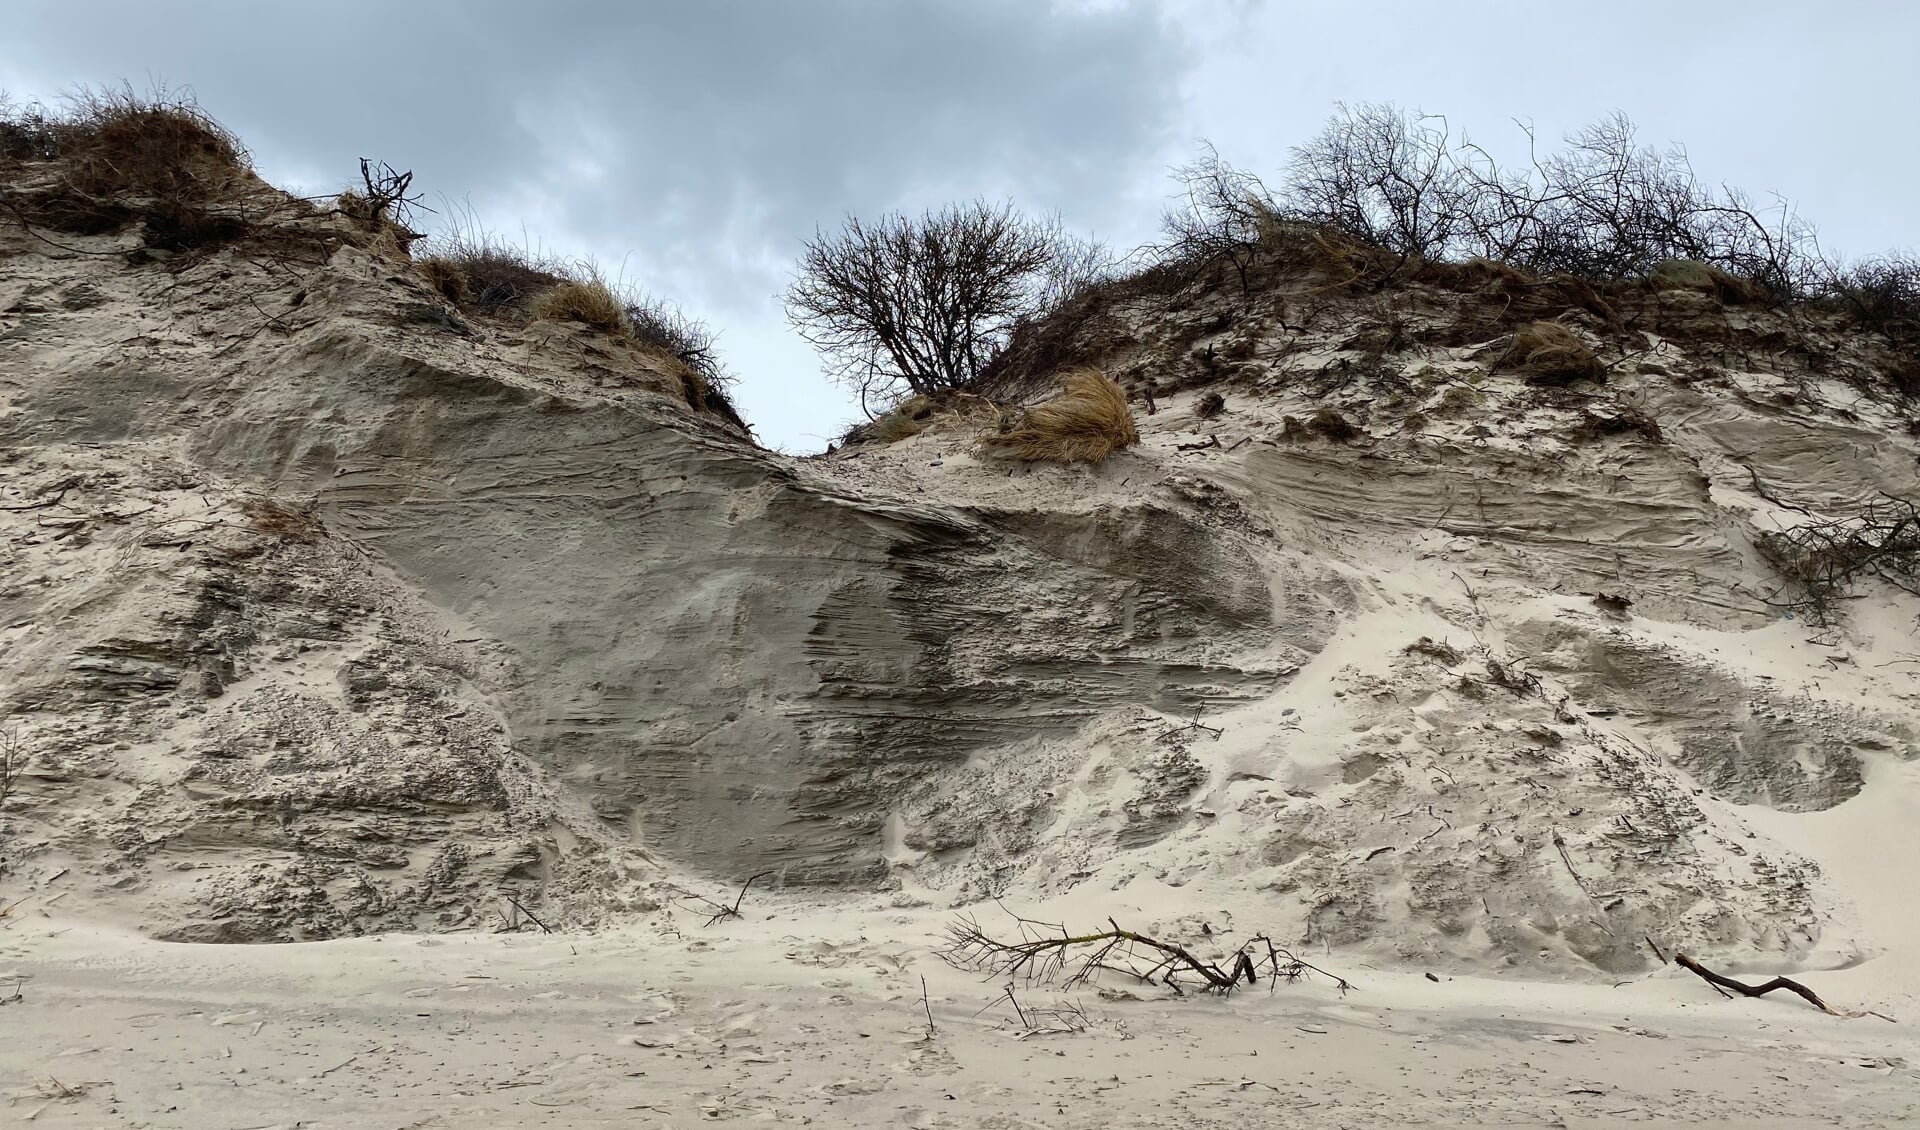 De duinen op de Brouwersdam na het natuurgeweld van storm Eunice.
(Foto: Petra de Vries)